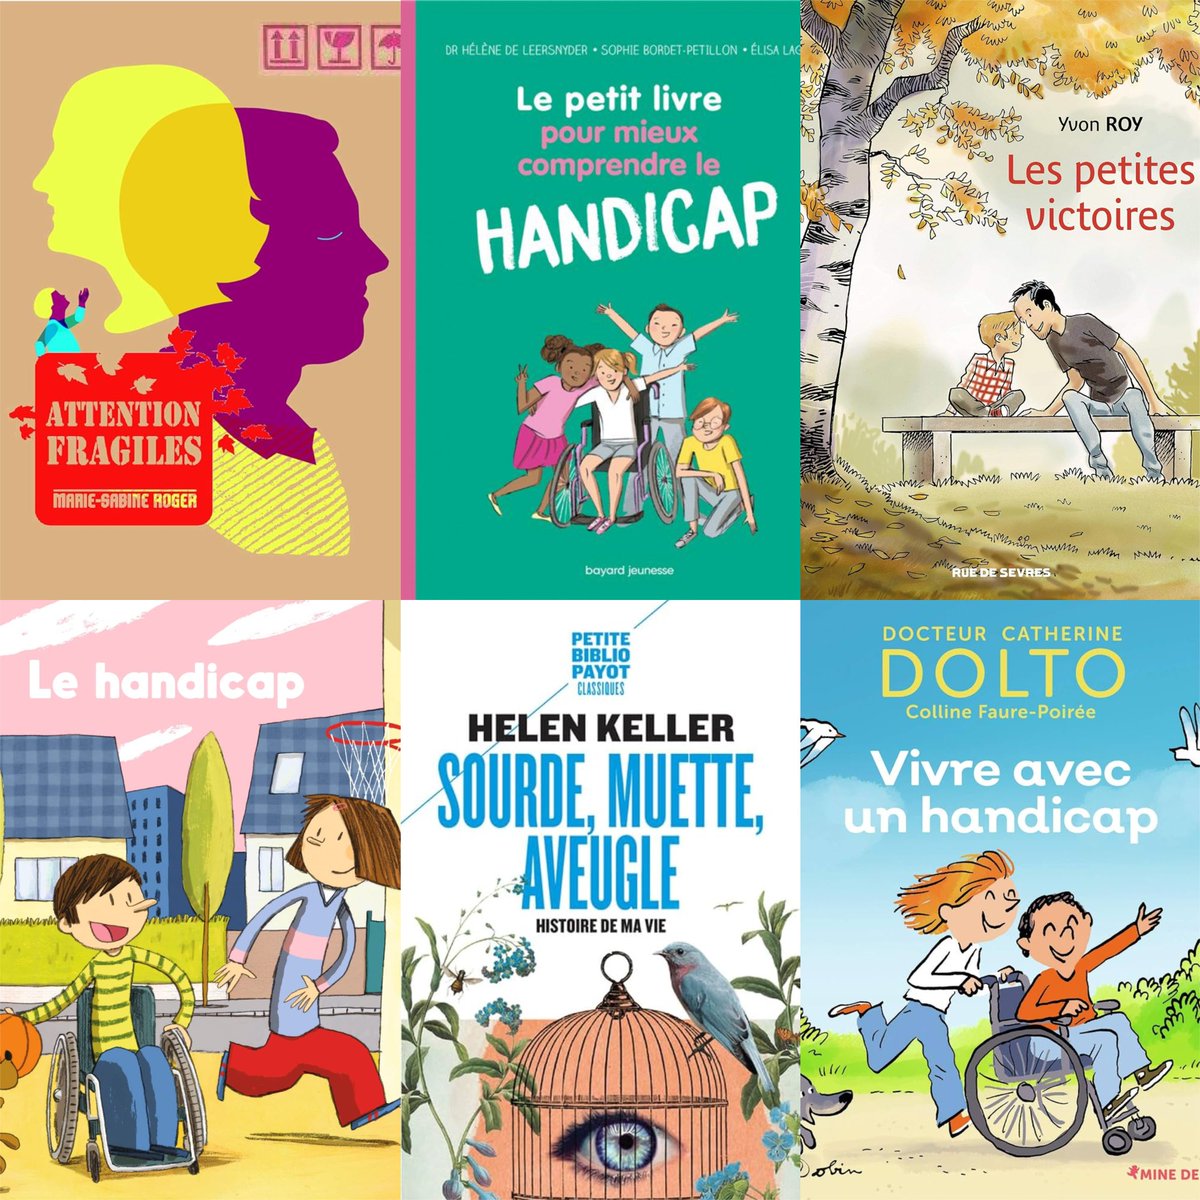 Meilleurs livres jeunesse pour sensibiliser les enfants au handicap ! 😍 ♿📚 🚸 📖 

Lire l'article👉urlz.fr/q1JE

#culturadvisor #culture #livres #lecture #lire #enfants #familles #éducation #apprentissage #handicap #sélection #recommandations #handicapé #différence